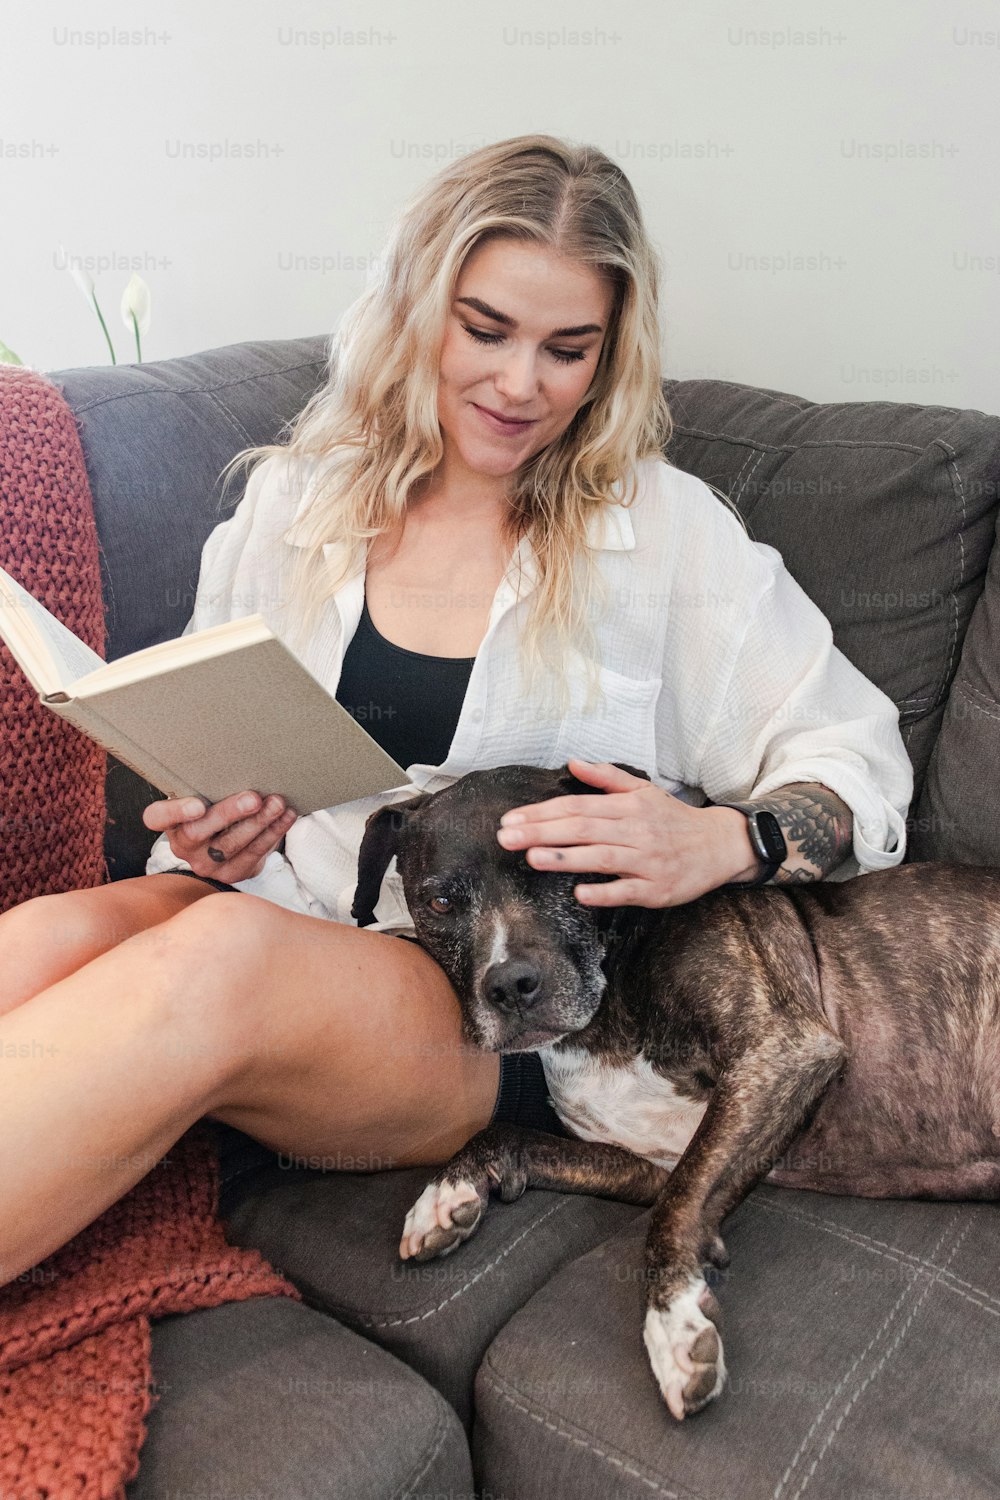 Una mujer sentada en un sofá leyendo un libro con su perro